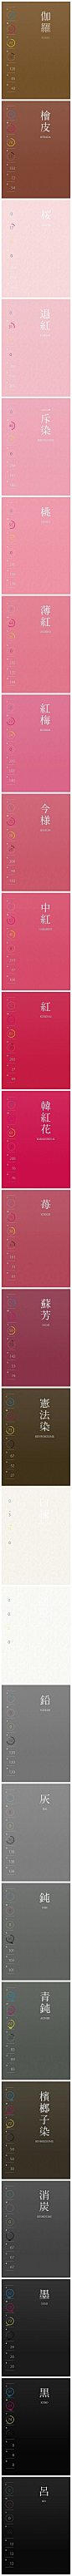 #设计配色# 一组中国风色调有很舒服的设计配色方案，包含RGB和CMYK色值，无码无水印，自己收藏！转需~ ​​​​